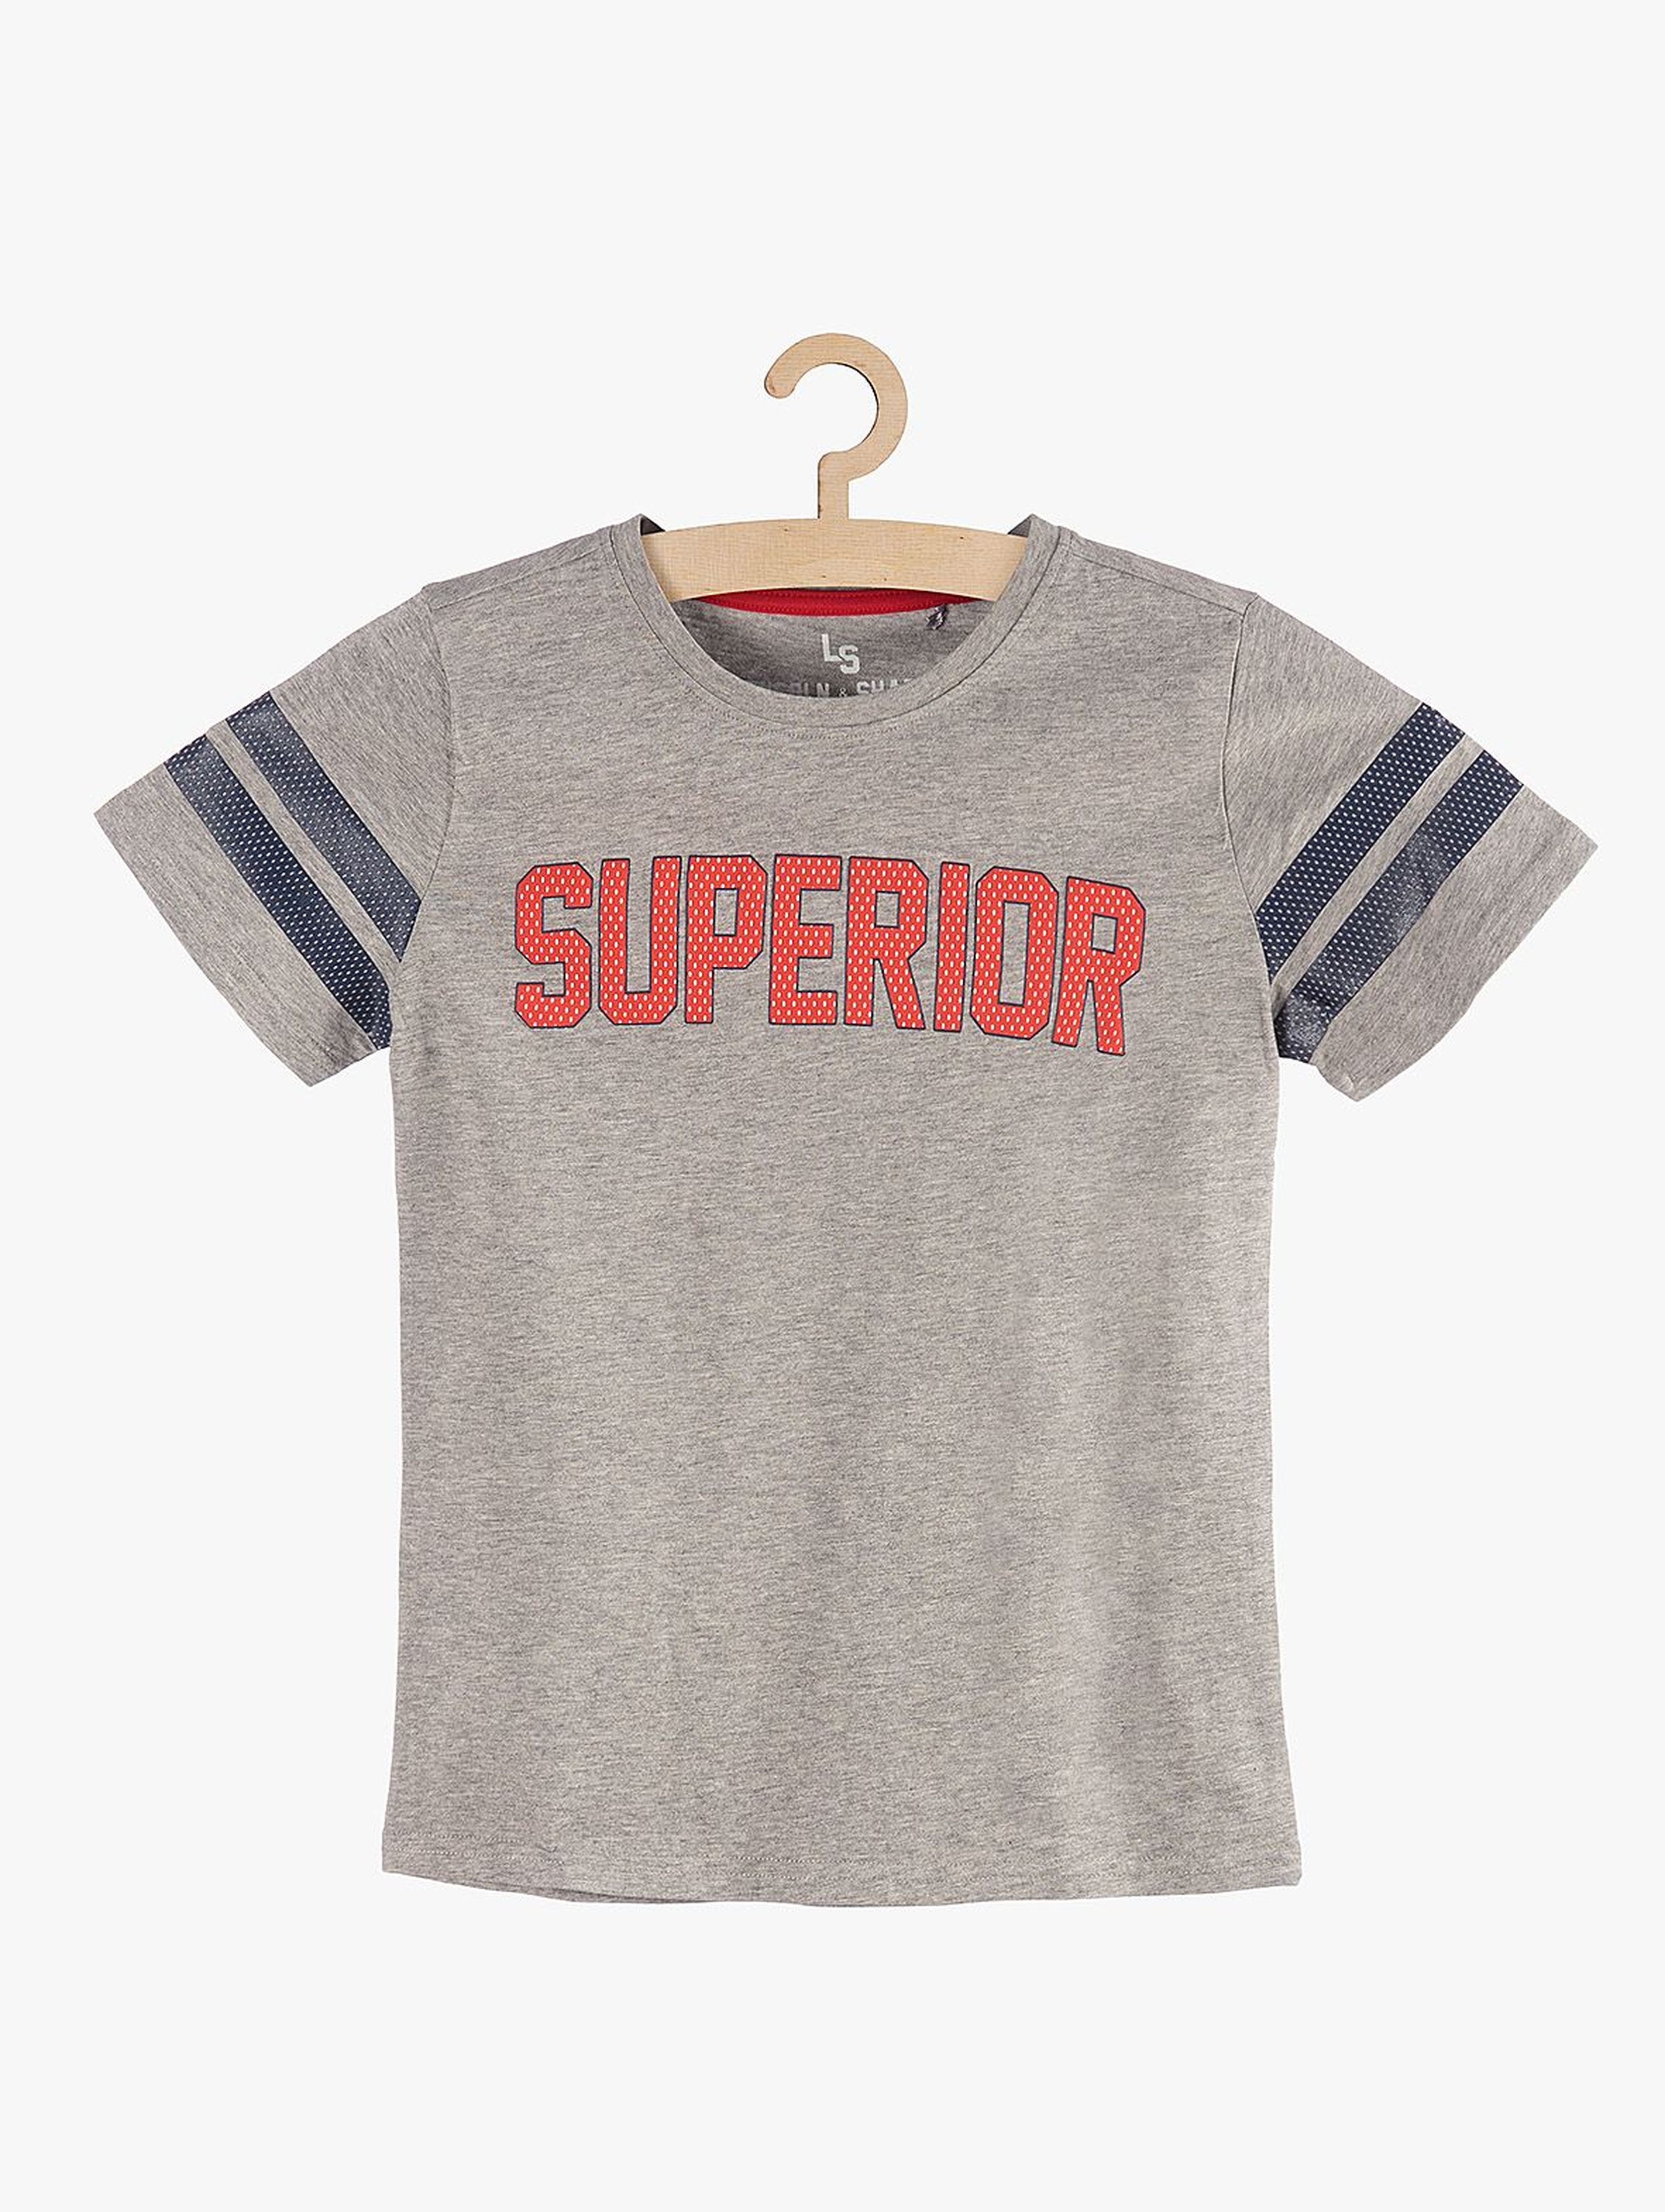 T-shirt chłopięcy szary z napisem "Superior"